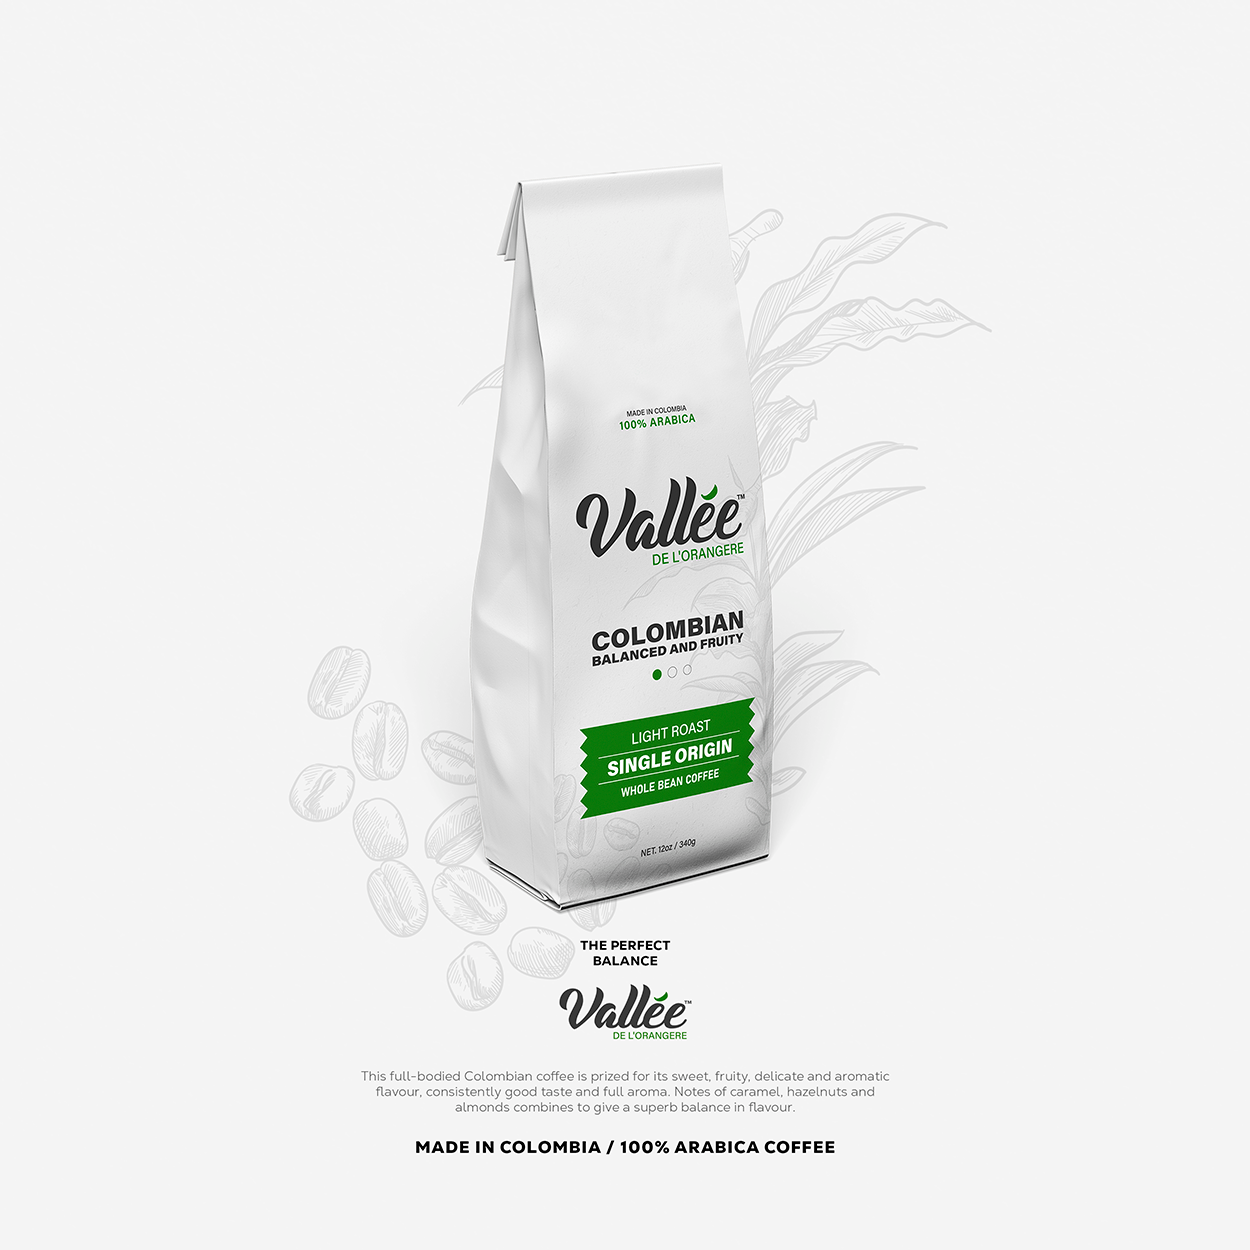 Vallee De'Lorangere Colombian Coffee Packaging Design & Branding UK England